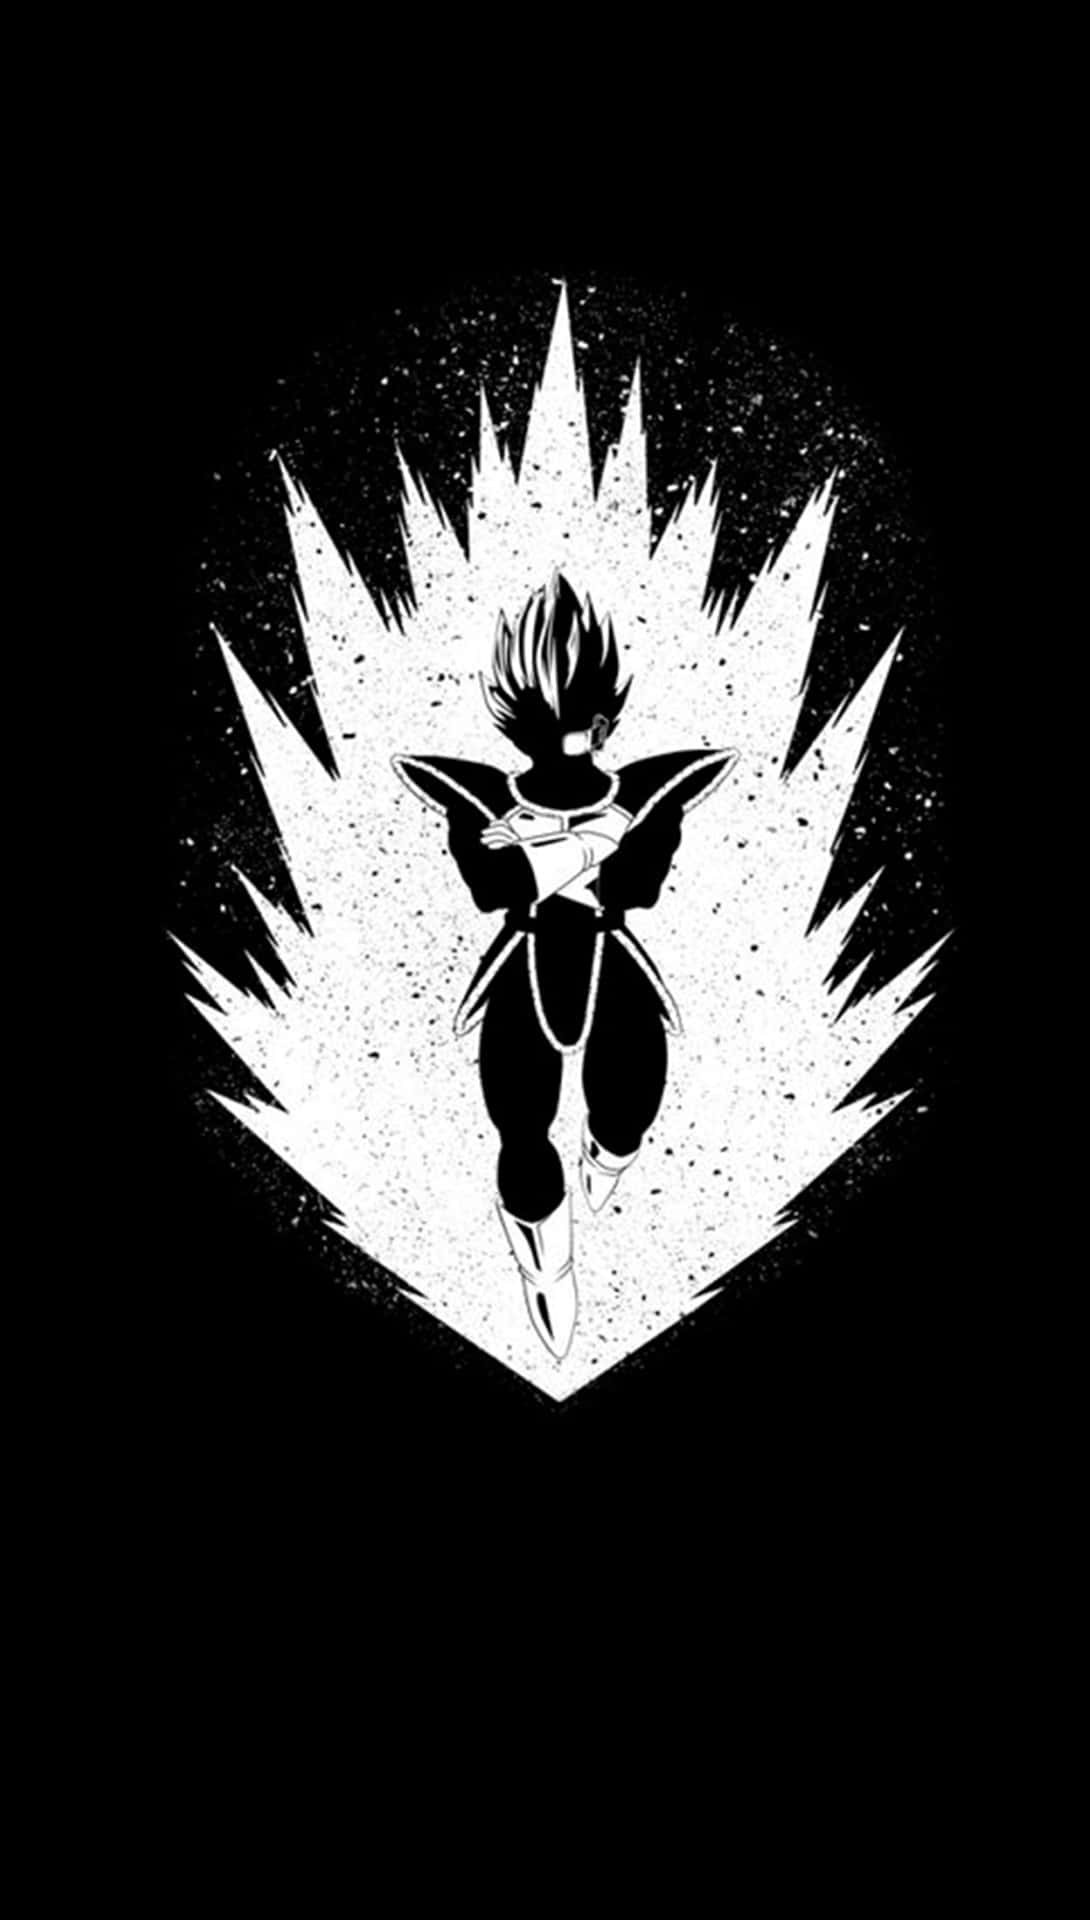 Download Vegeta Black and White - Super Saiyan Hero Wallpaper ...